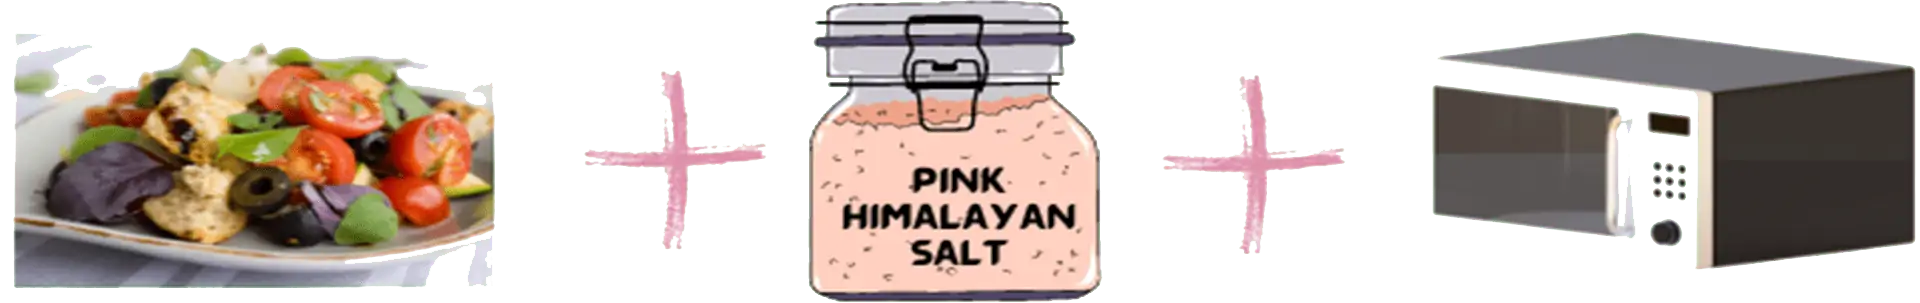 himalayan salt block recipes steak himalayan salt block fish recipes himalayan salt block recipes shrimp himalayan salt block recipes scallops